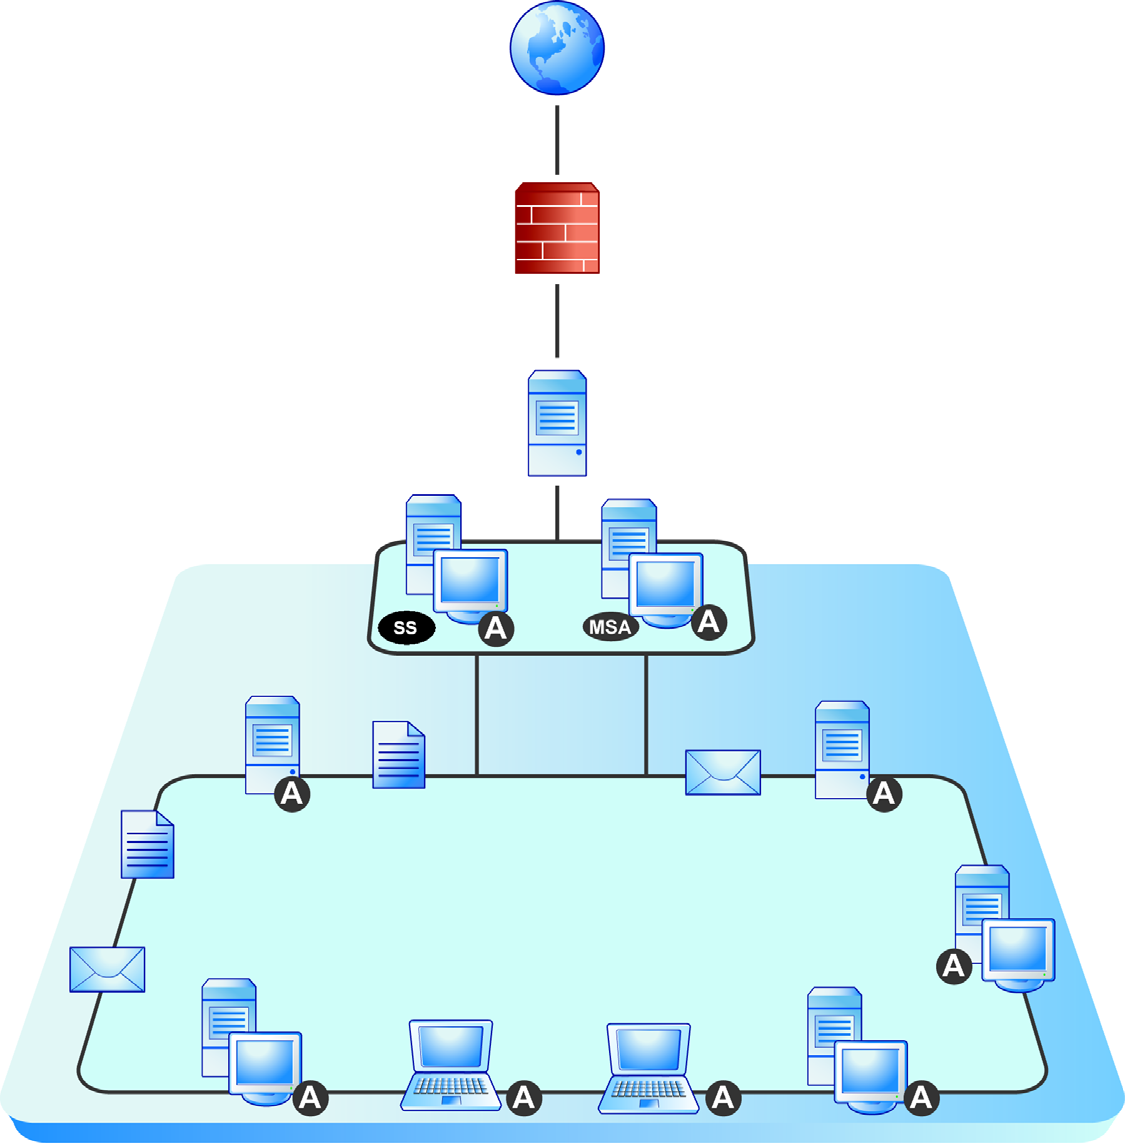 Przygotowanie do instalacji Program Scan Server: pobieranie składników związanych ze skanowaniem z firmy Trend Micro i wykorzystywanie ich do skanowania klientów.